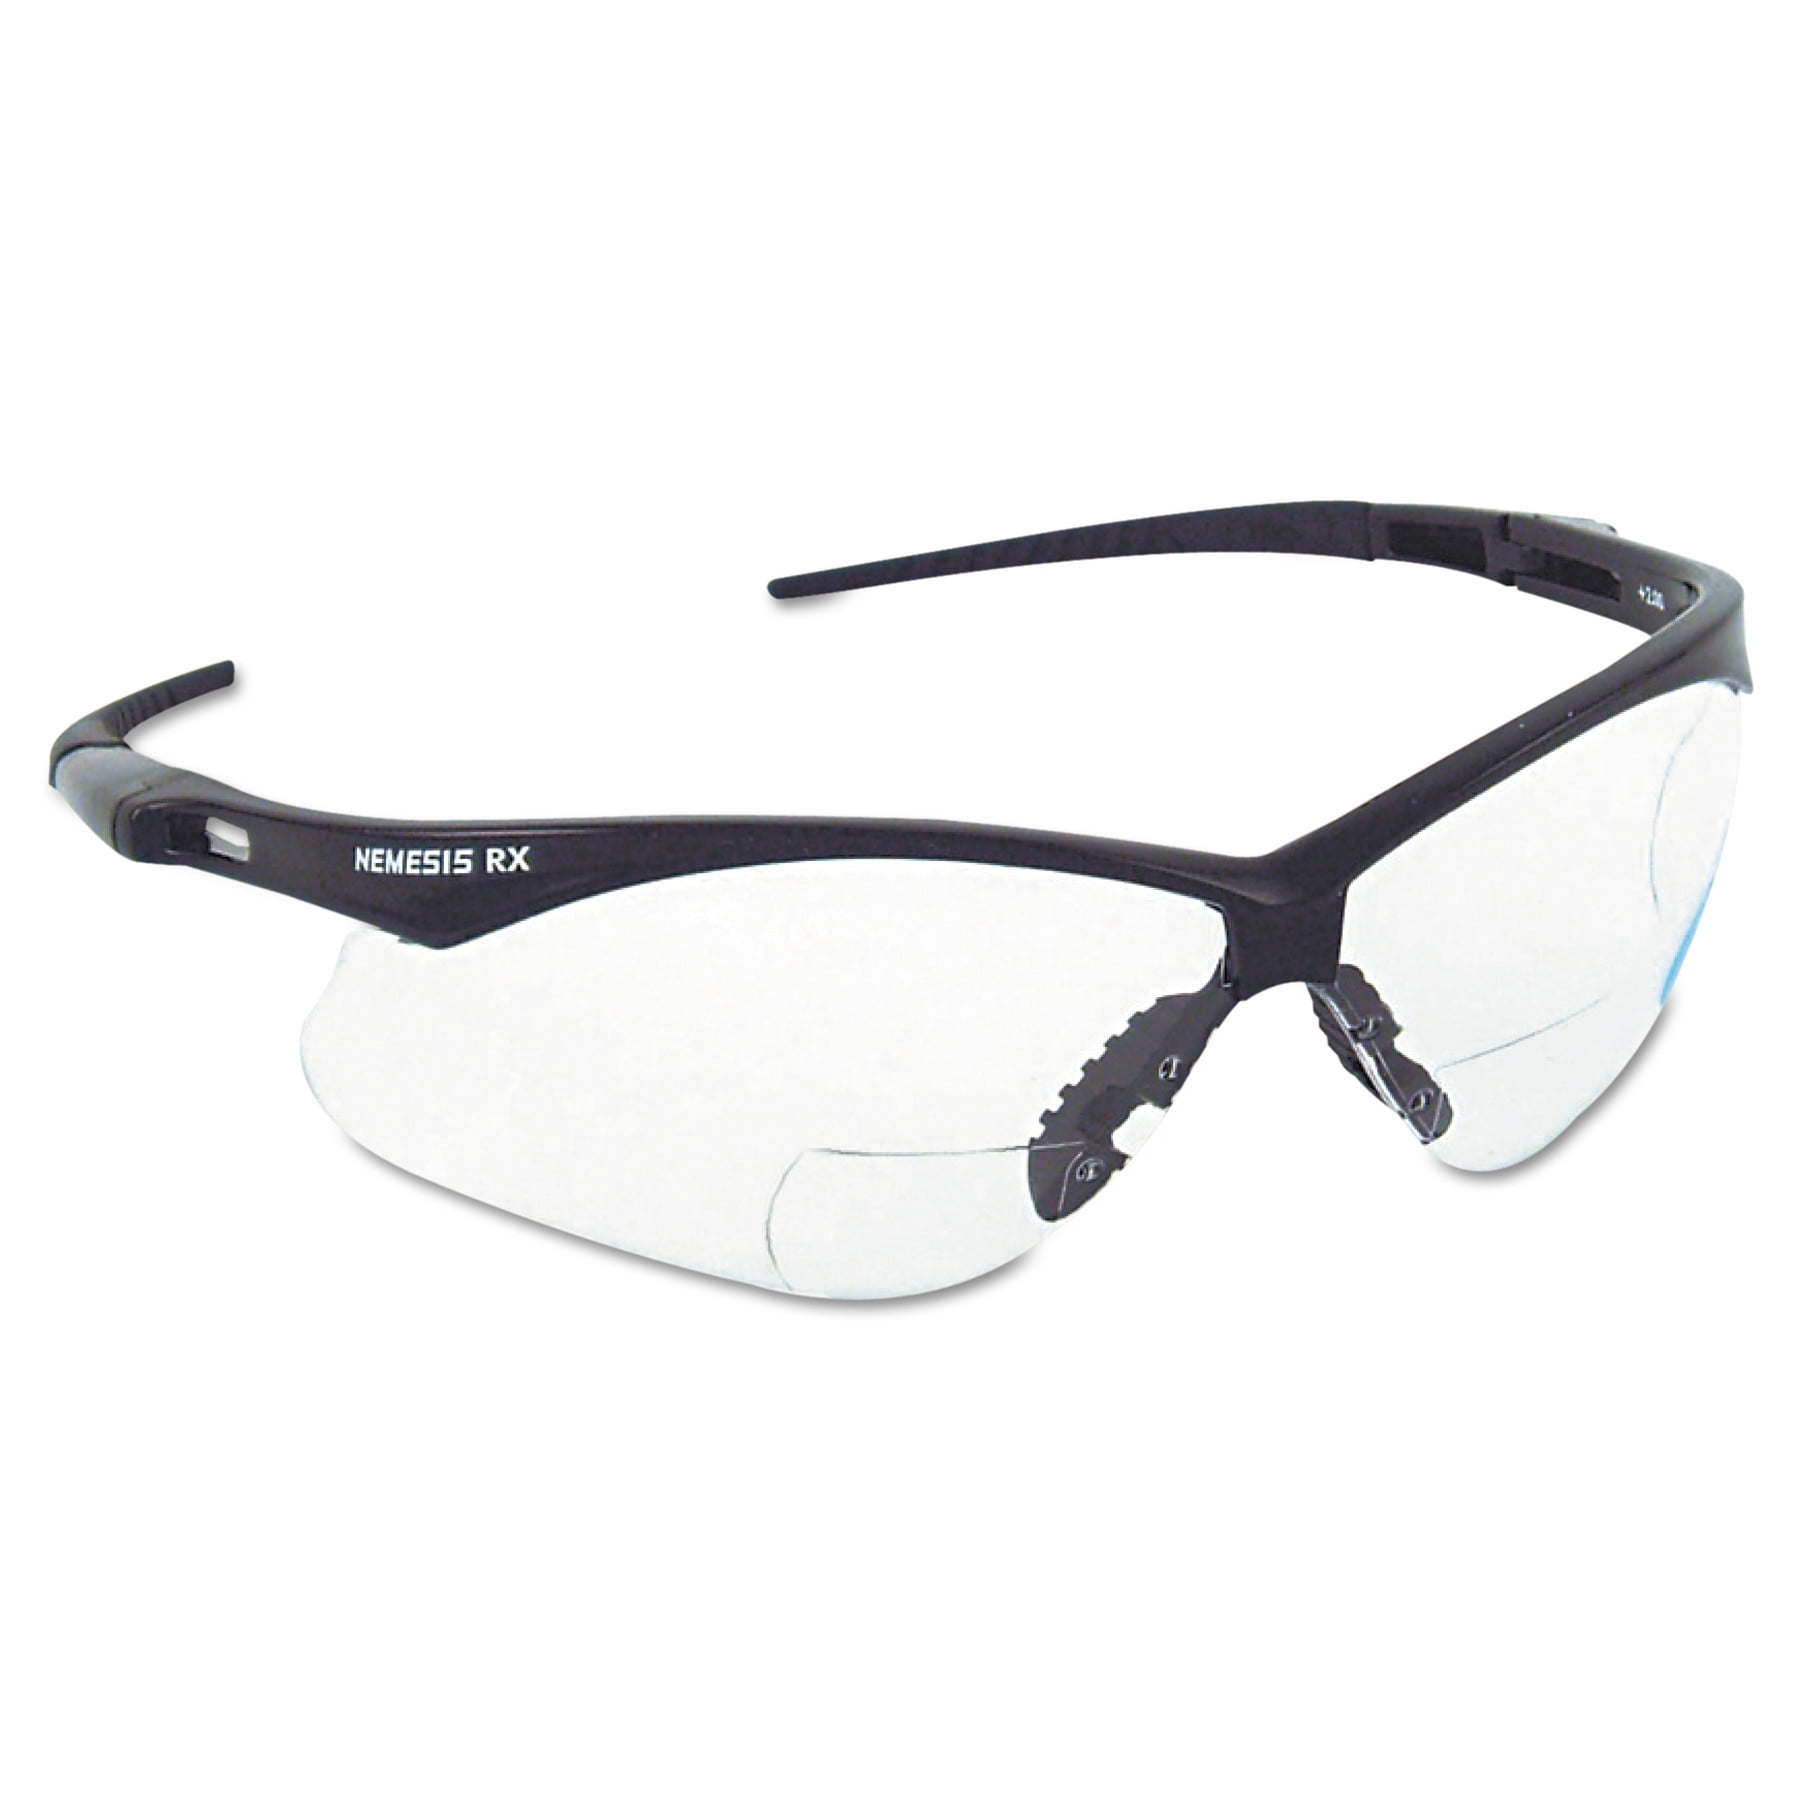 Jak19642 for sale online Jackson Safety* Nemesis Safety Glasses Black Frame Blue Shield Lens 